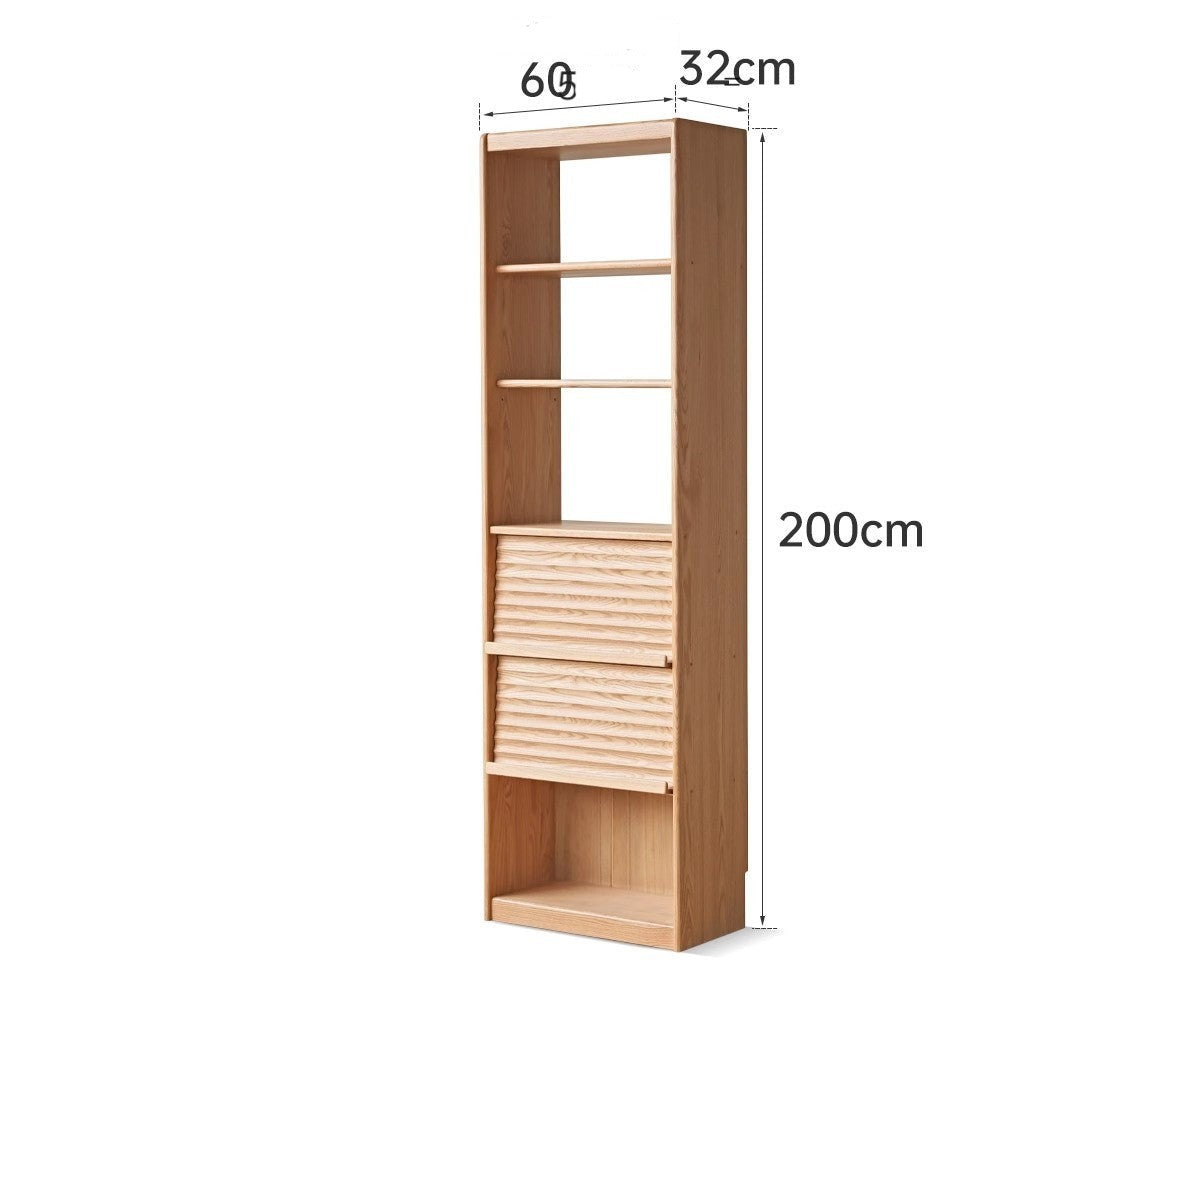 Oak solid wood bookcase with glass door floor-standing bookshelf multi-layer storage rack free combination display cabinet"